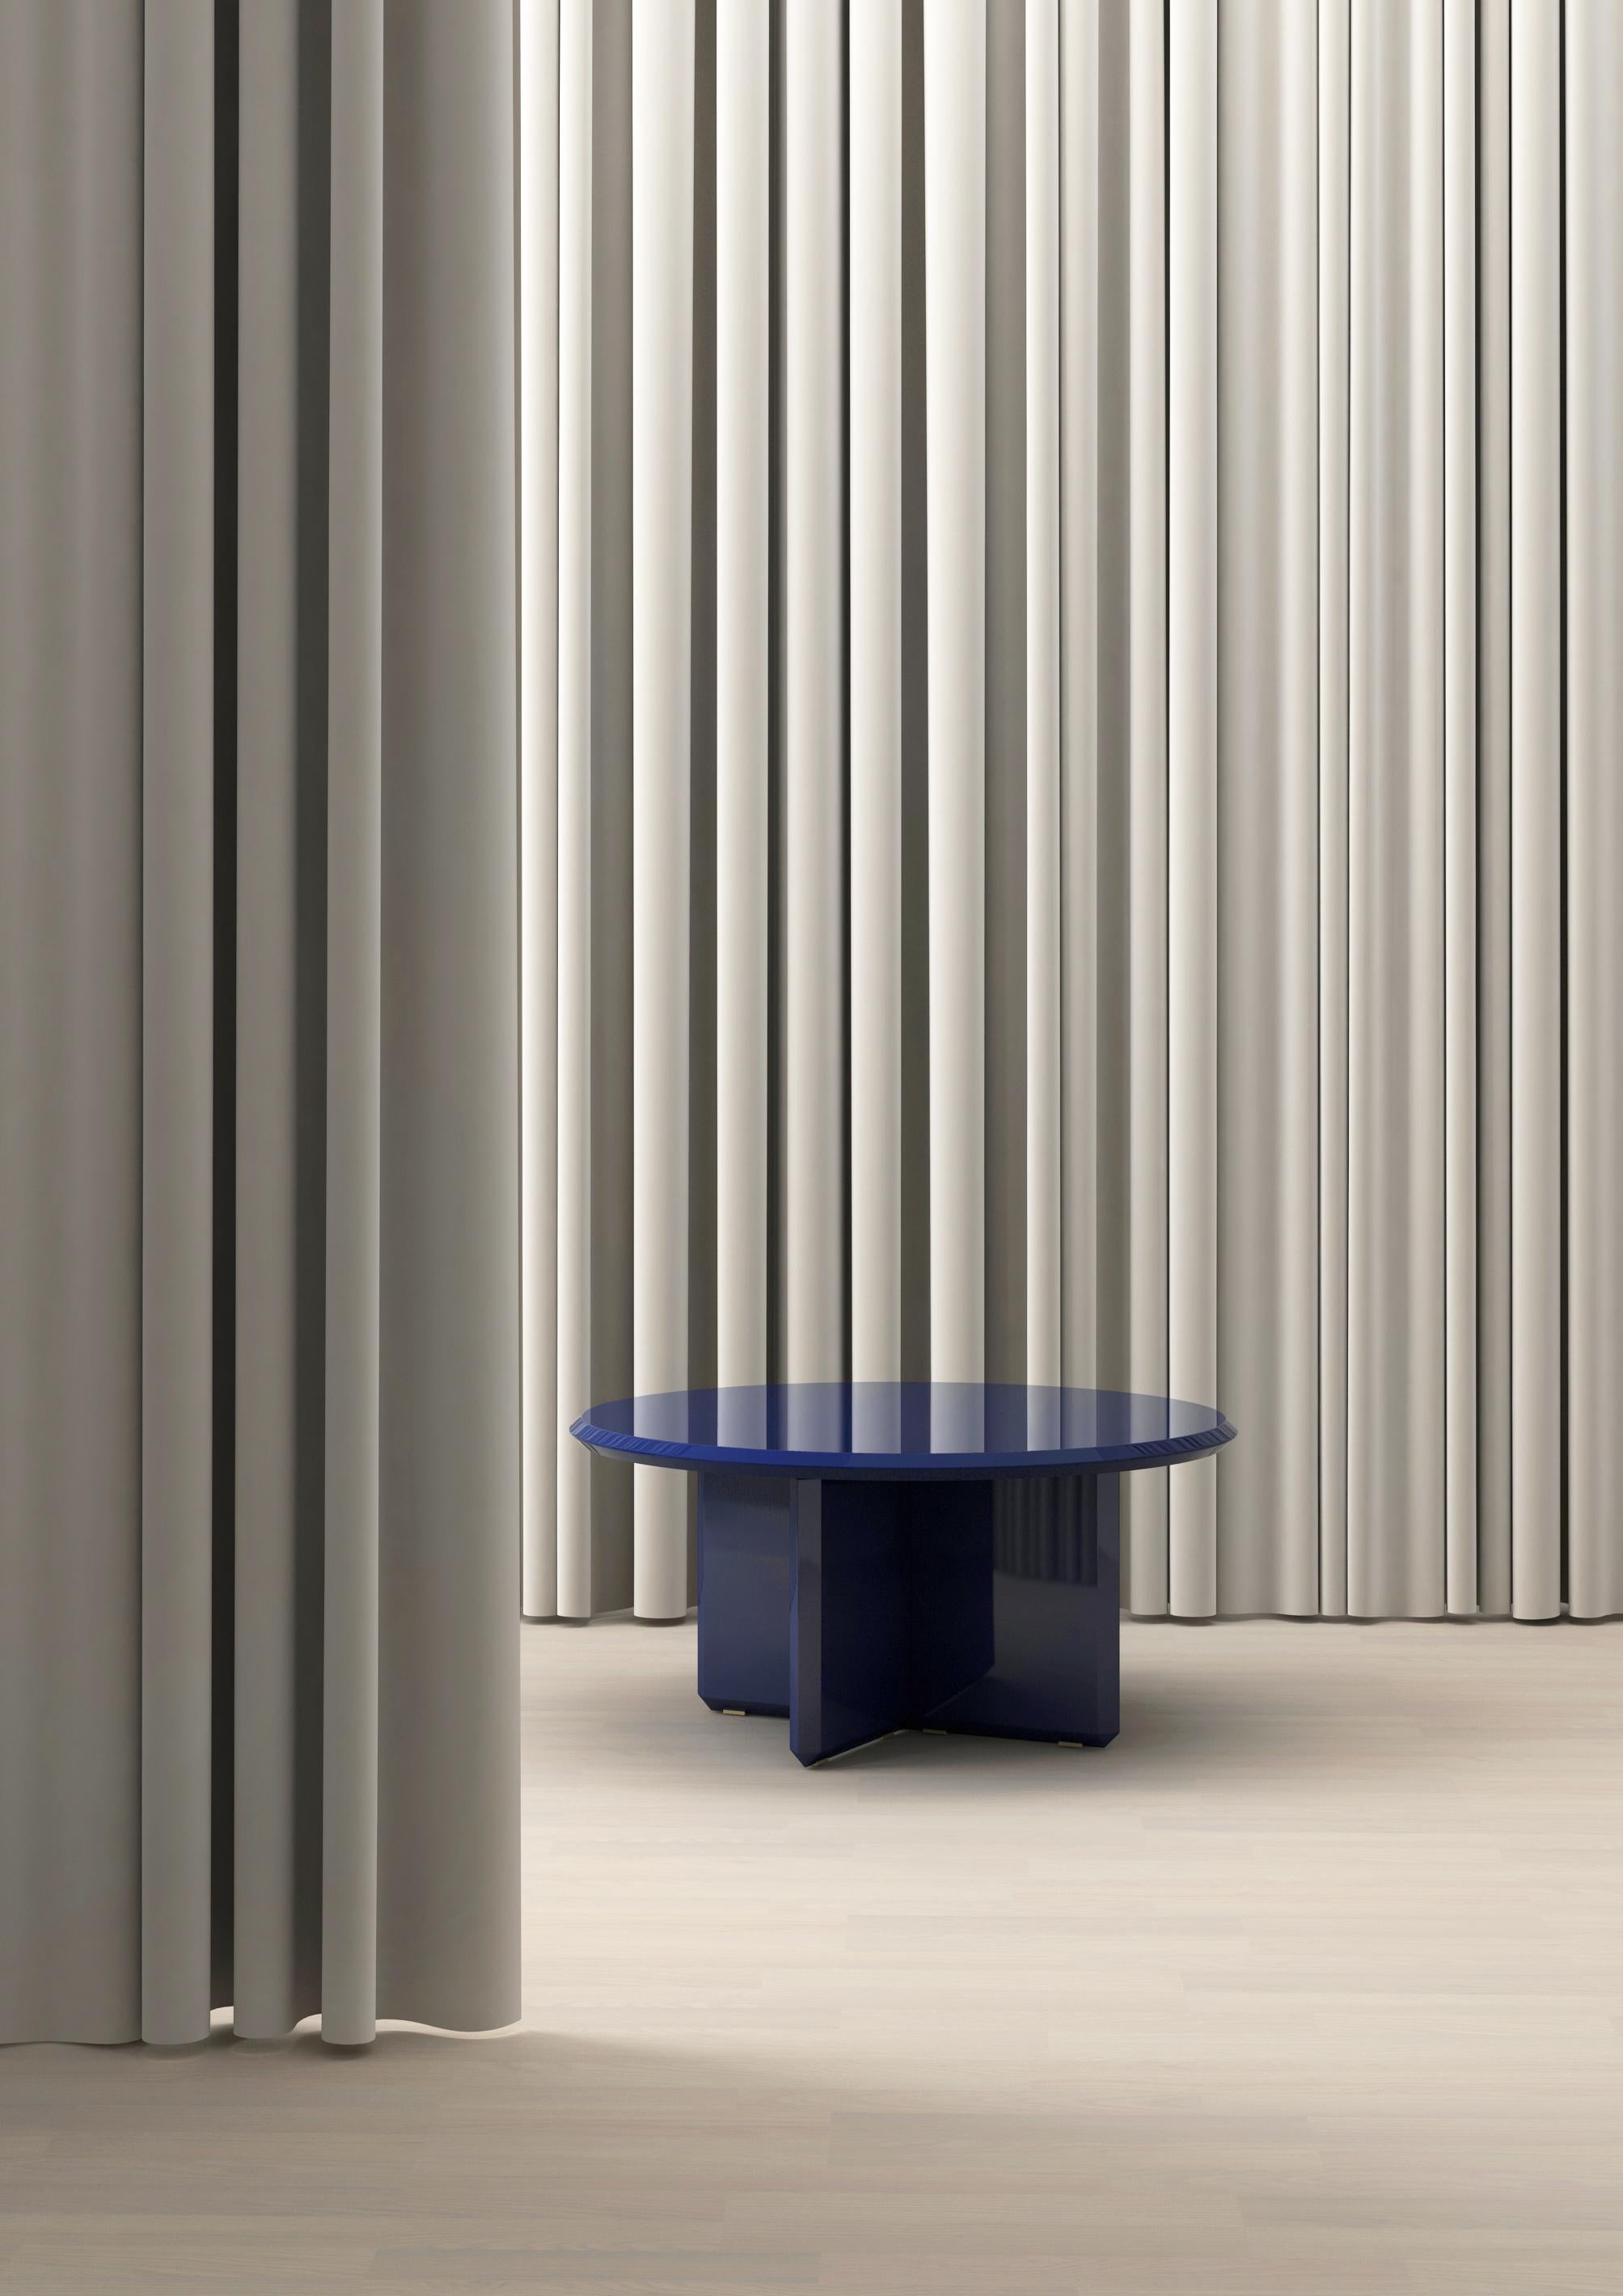 Der Vane-Tisch hat einen sehr klaren und geometrischen Umriss. Durch die Formgebung jeder Kante, die dem Schliff eines Edelsteins ähnelt, in Kombination mit einer hochglanzpolierten UV-Klavierlackoberfläche, vermittelt er ein starkes Gefühl von